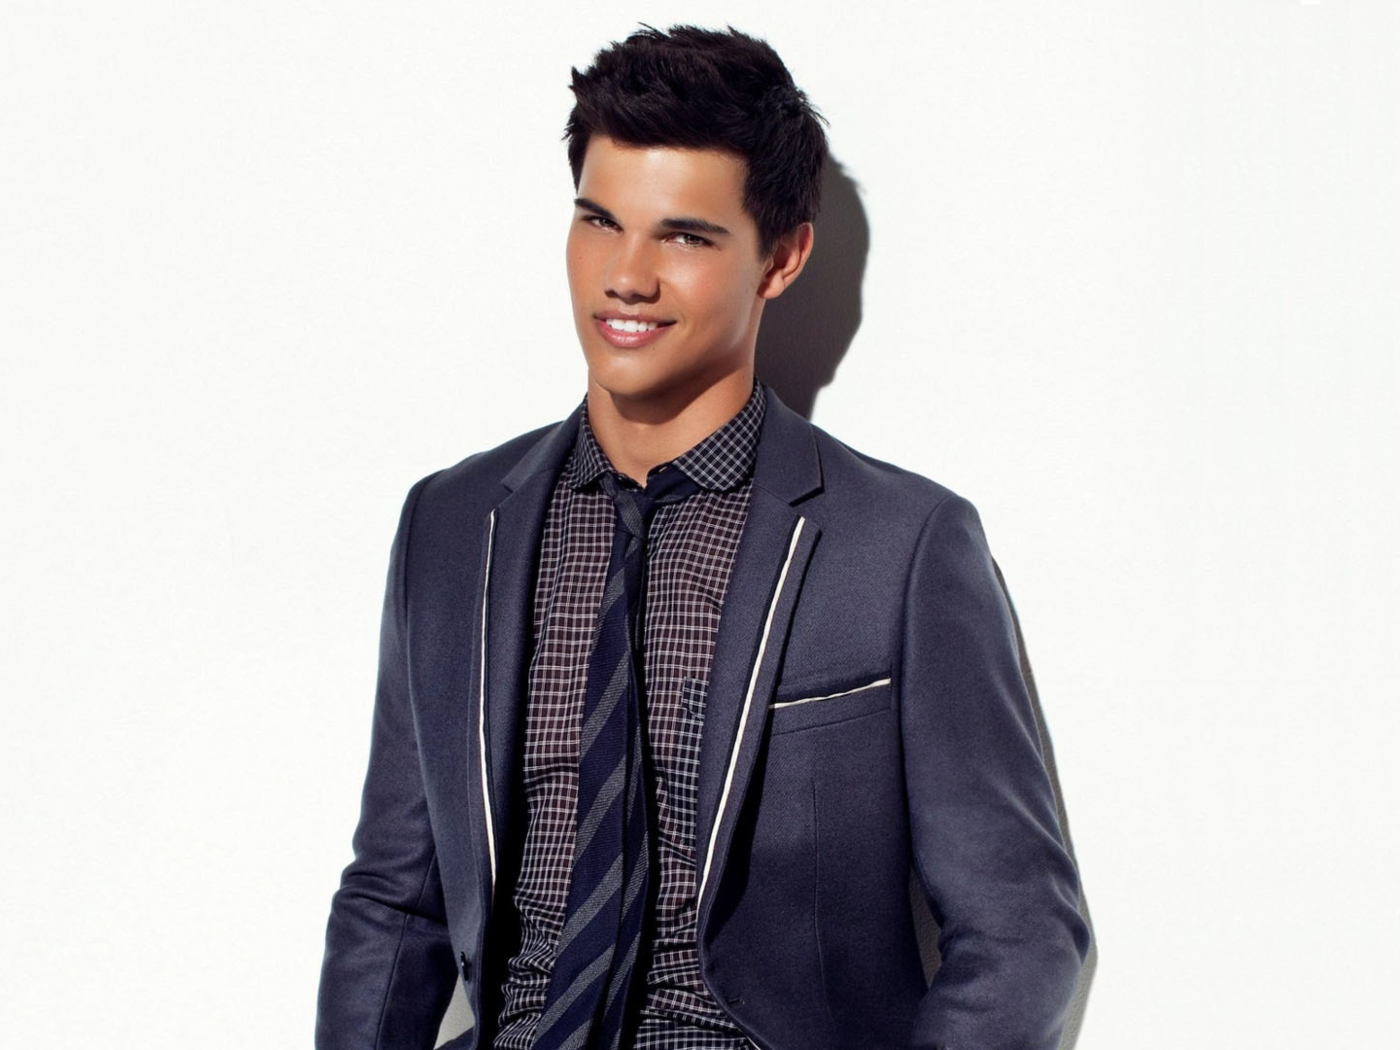 Taylor Lautner Smile screenshot #1 1400x1050